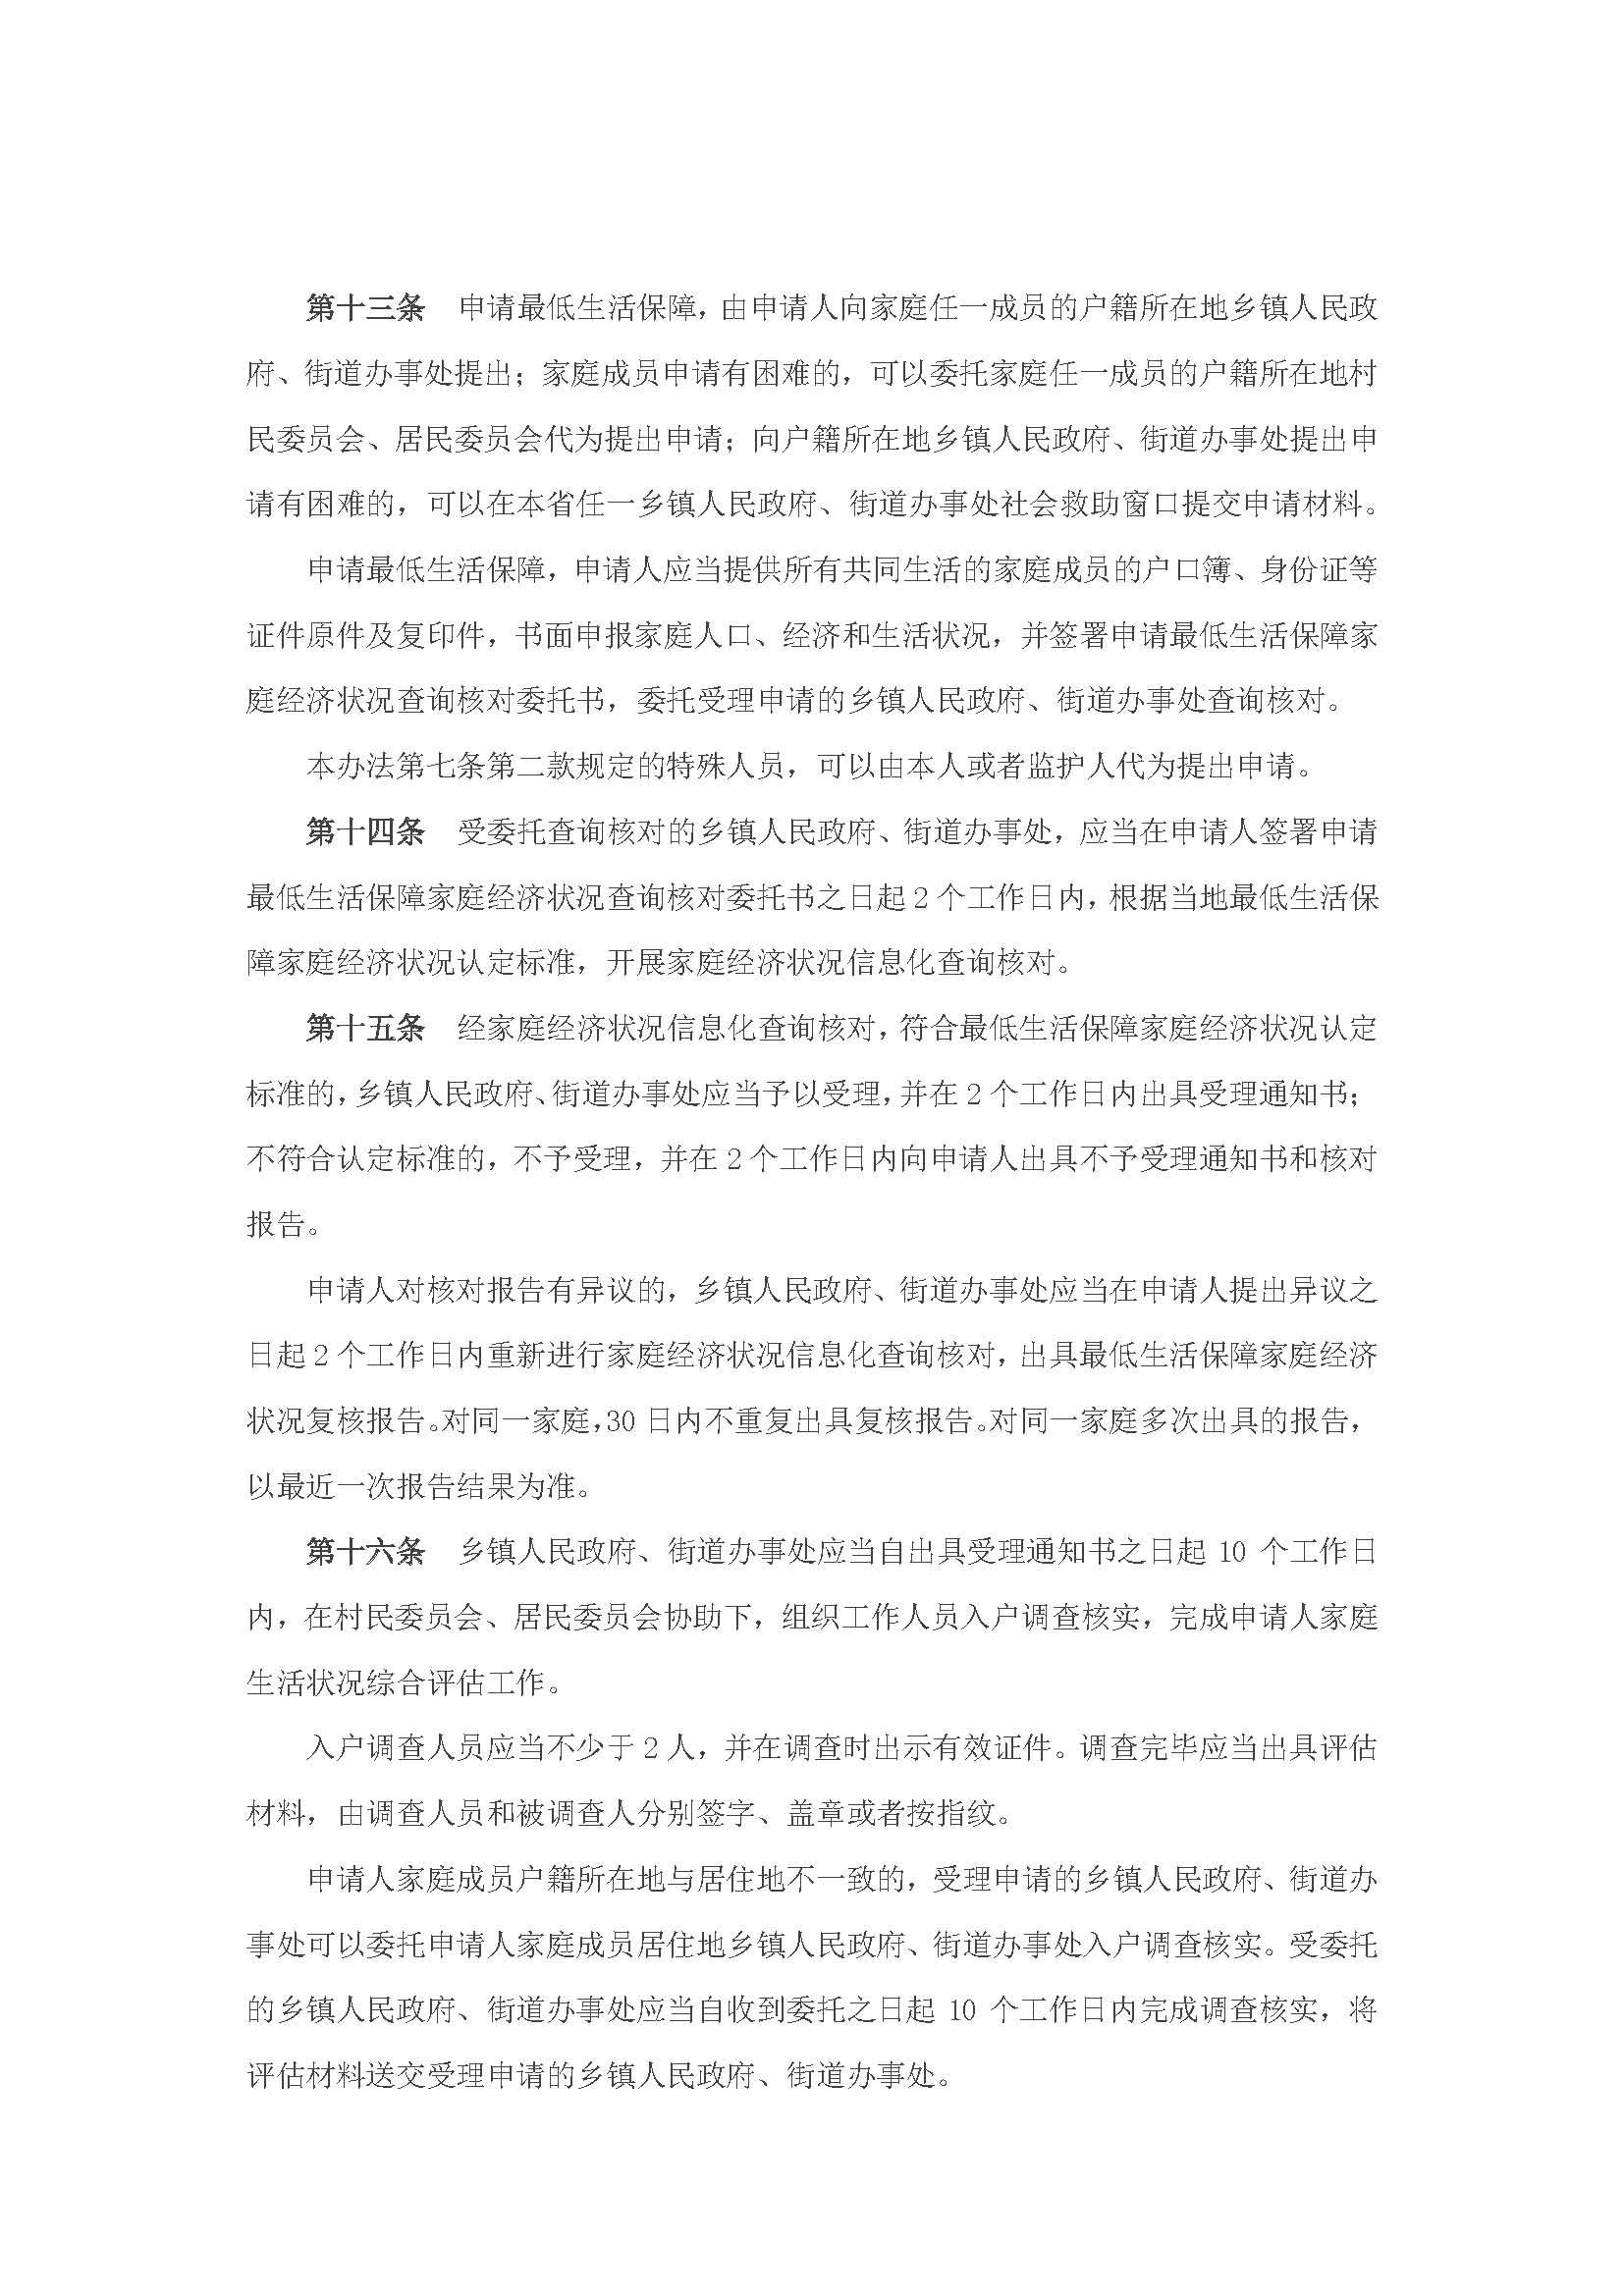 广东省最低生活保障制度实施办法_页面_5.jpg